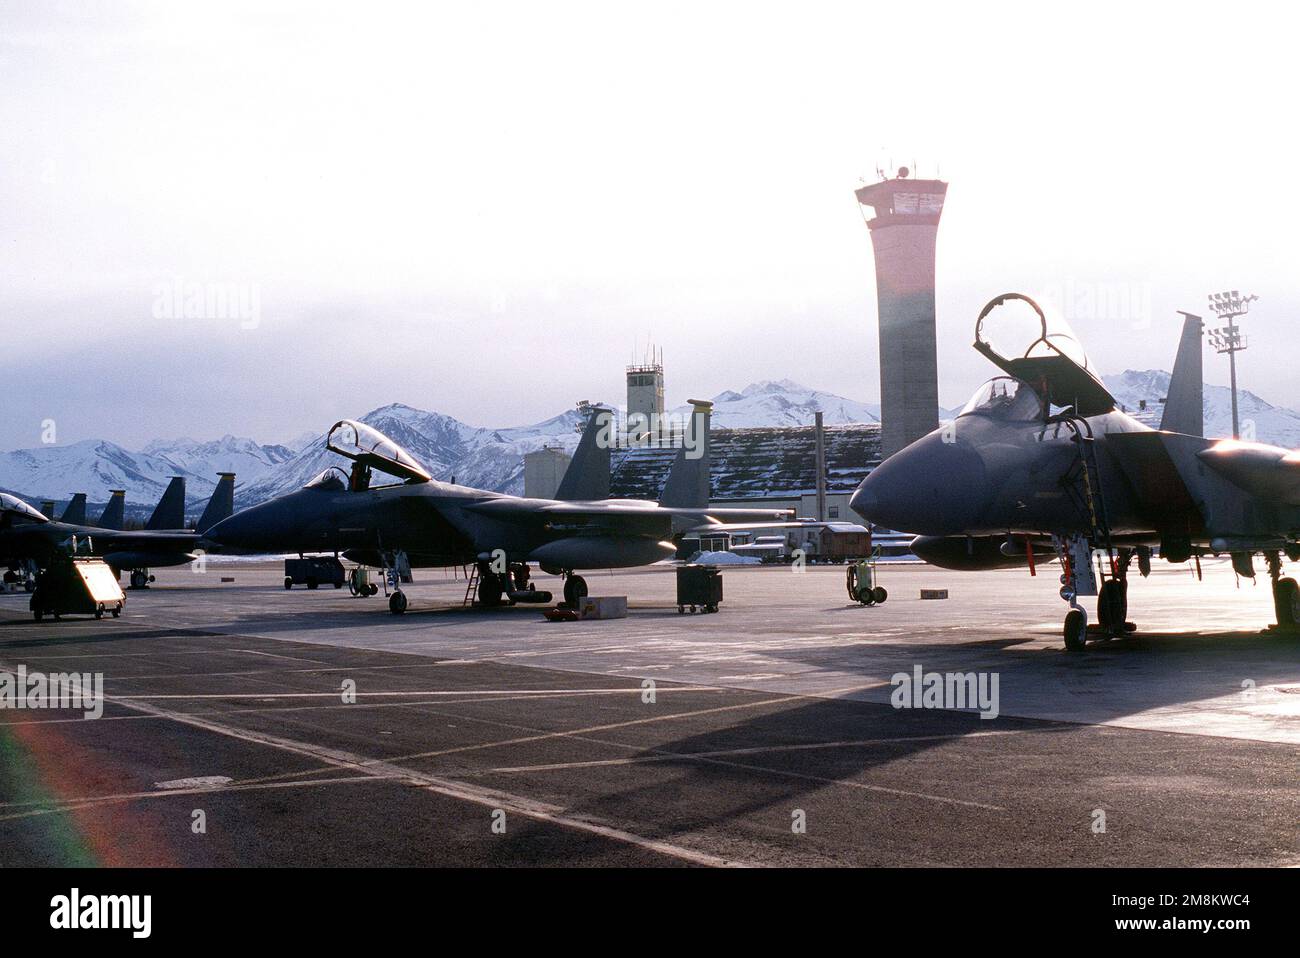 Vorderansicht der F-15s, zugeordnet zu der 54. Kampfgeschwader, die auf der Rampe geparkt ist. Der Kontrollturm und die schneebedeckten Berge sind im Hintergrund. Basis: Luftwaffenstützpunkt Elmendorf Bundesstaat: Alaska (AK) Land: Vereinigte Staaten von Amerika (USA) Stockfoto